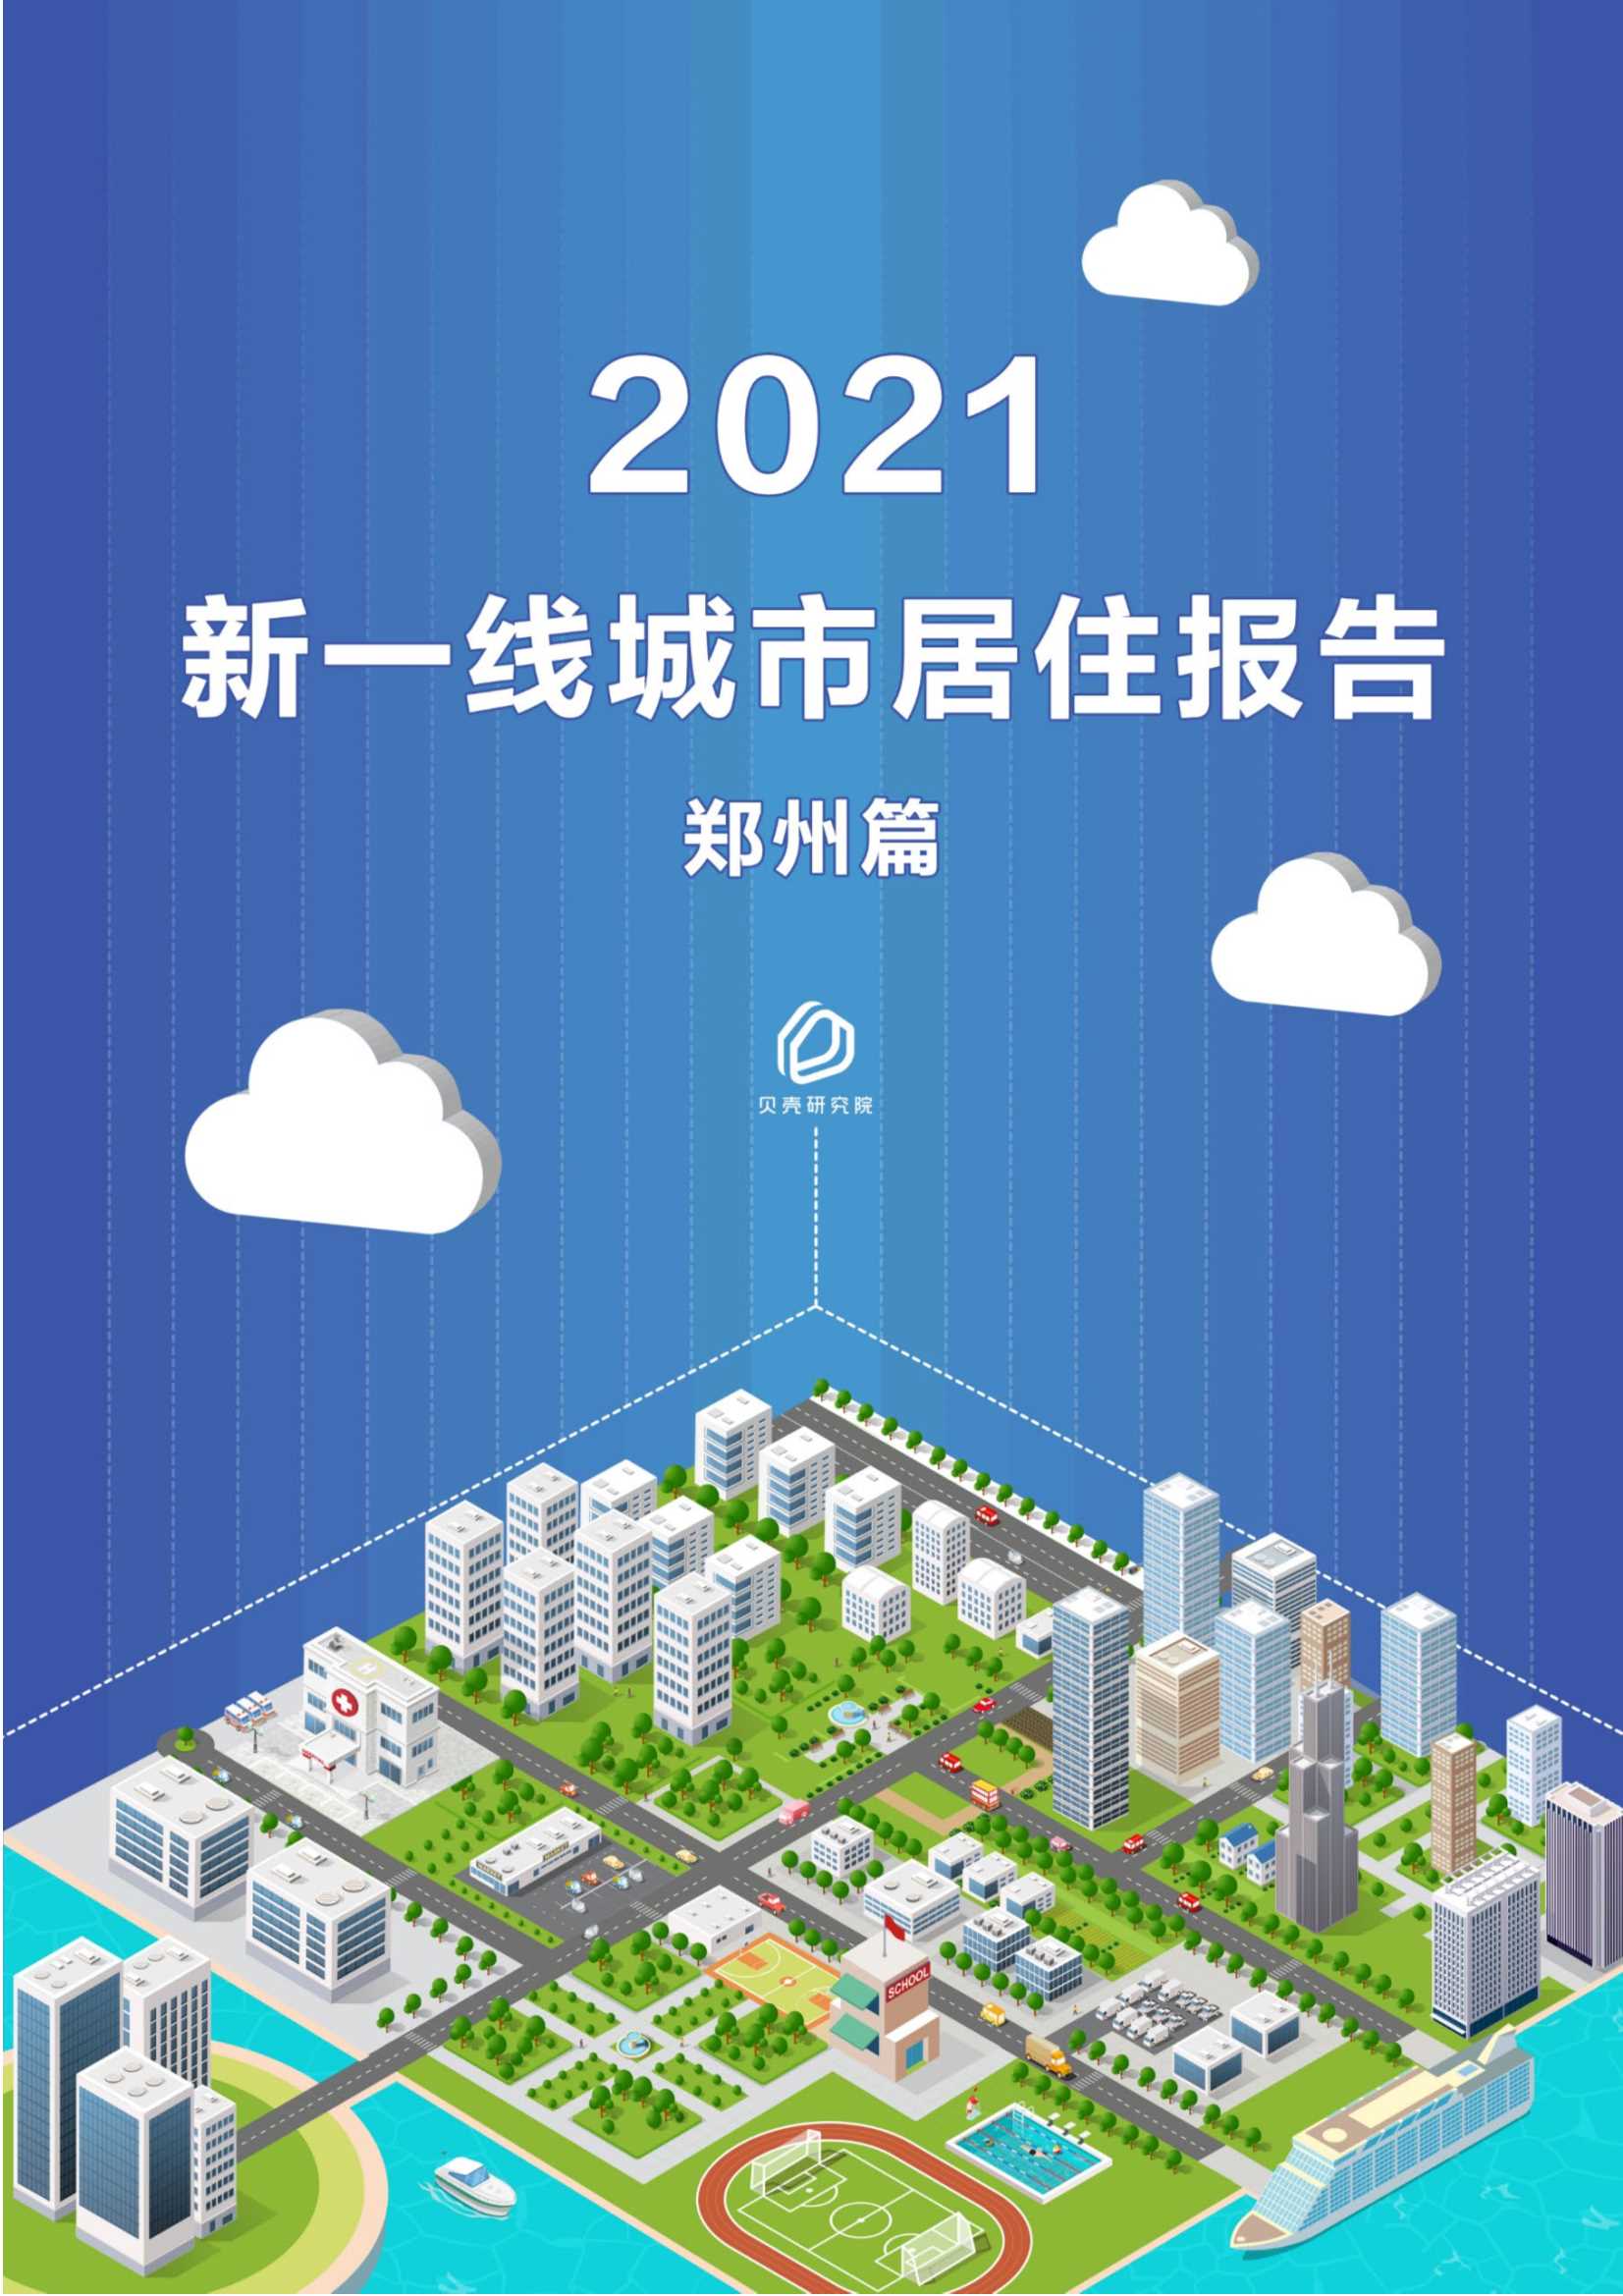 贝壳研究院-新一线城市居住报告郑州篇-2021.05-14页